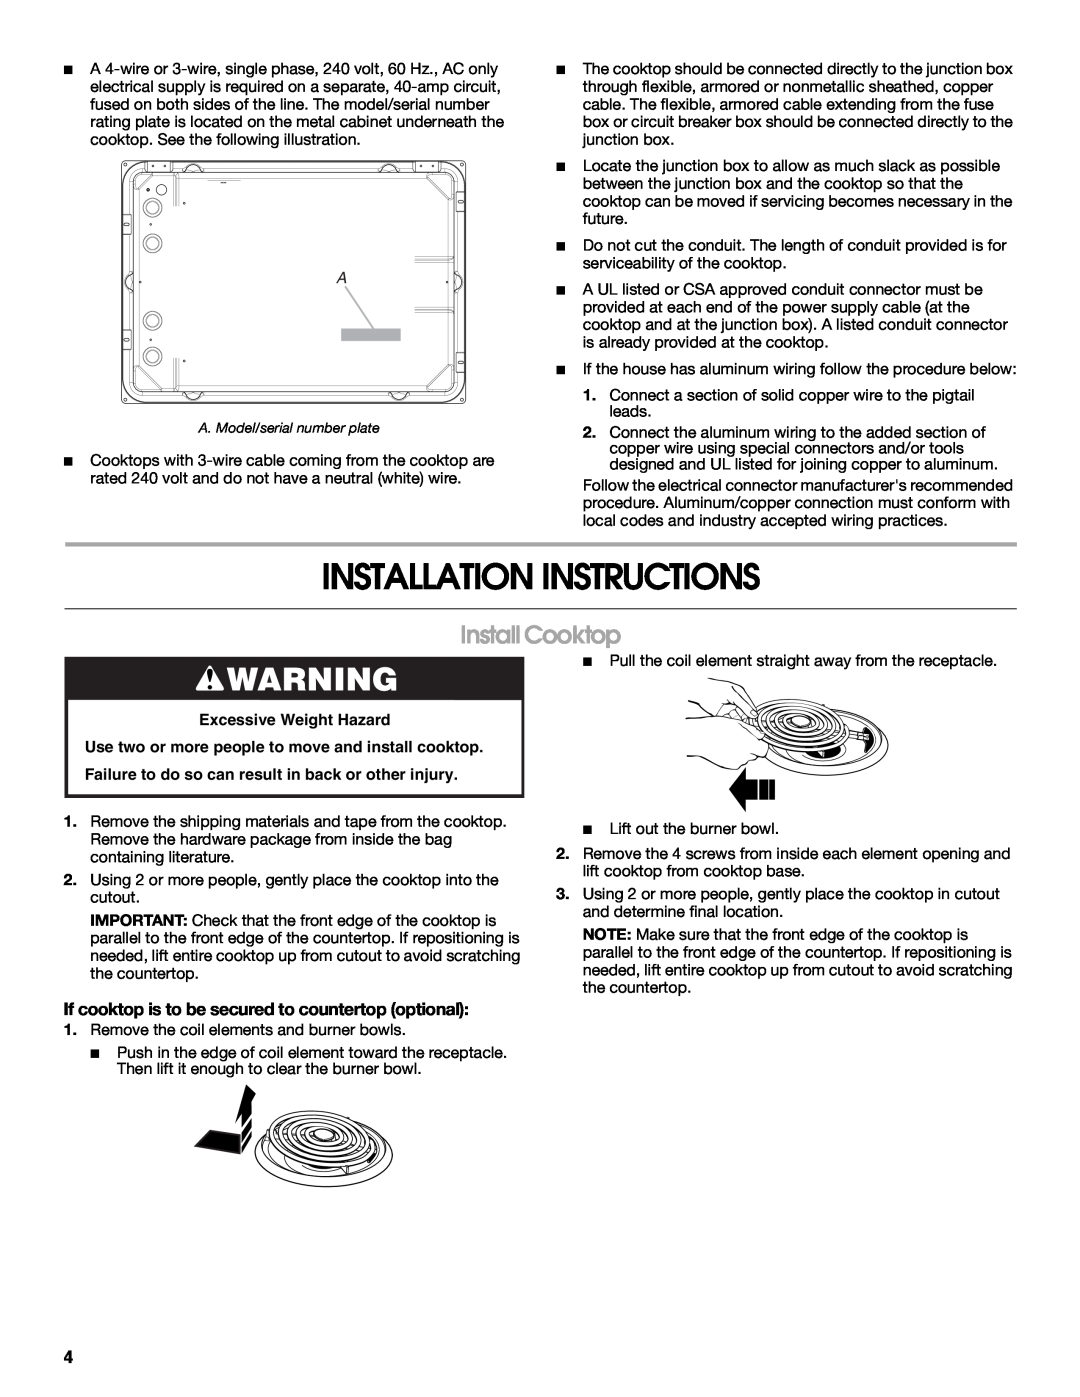 Maytag W10274252A installation instructions Installation Instructions, Install Cooktop, Excessive Weight Hazard 